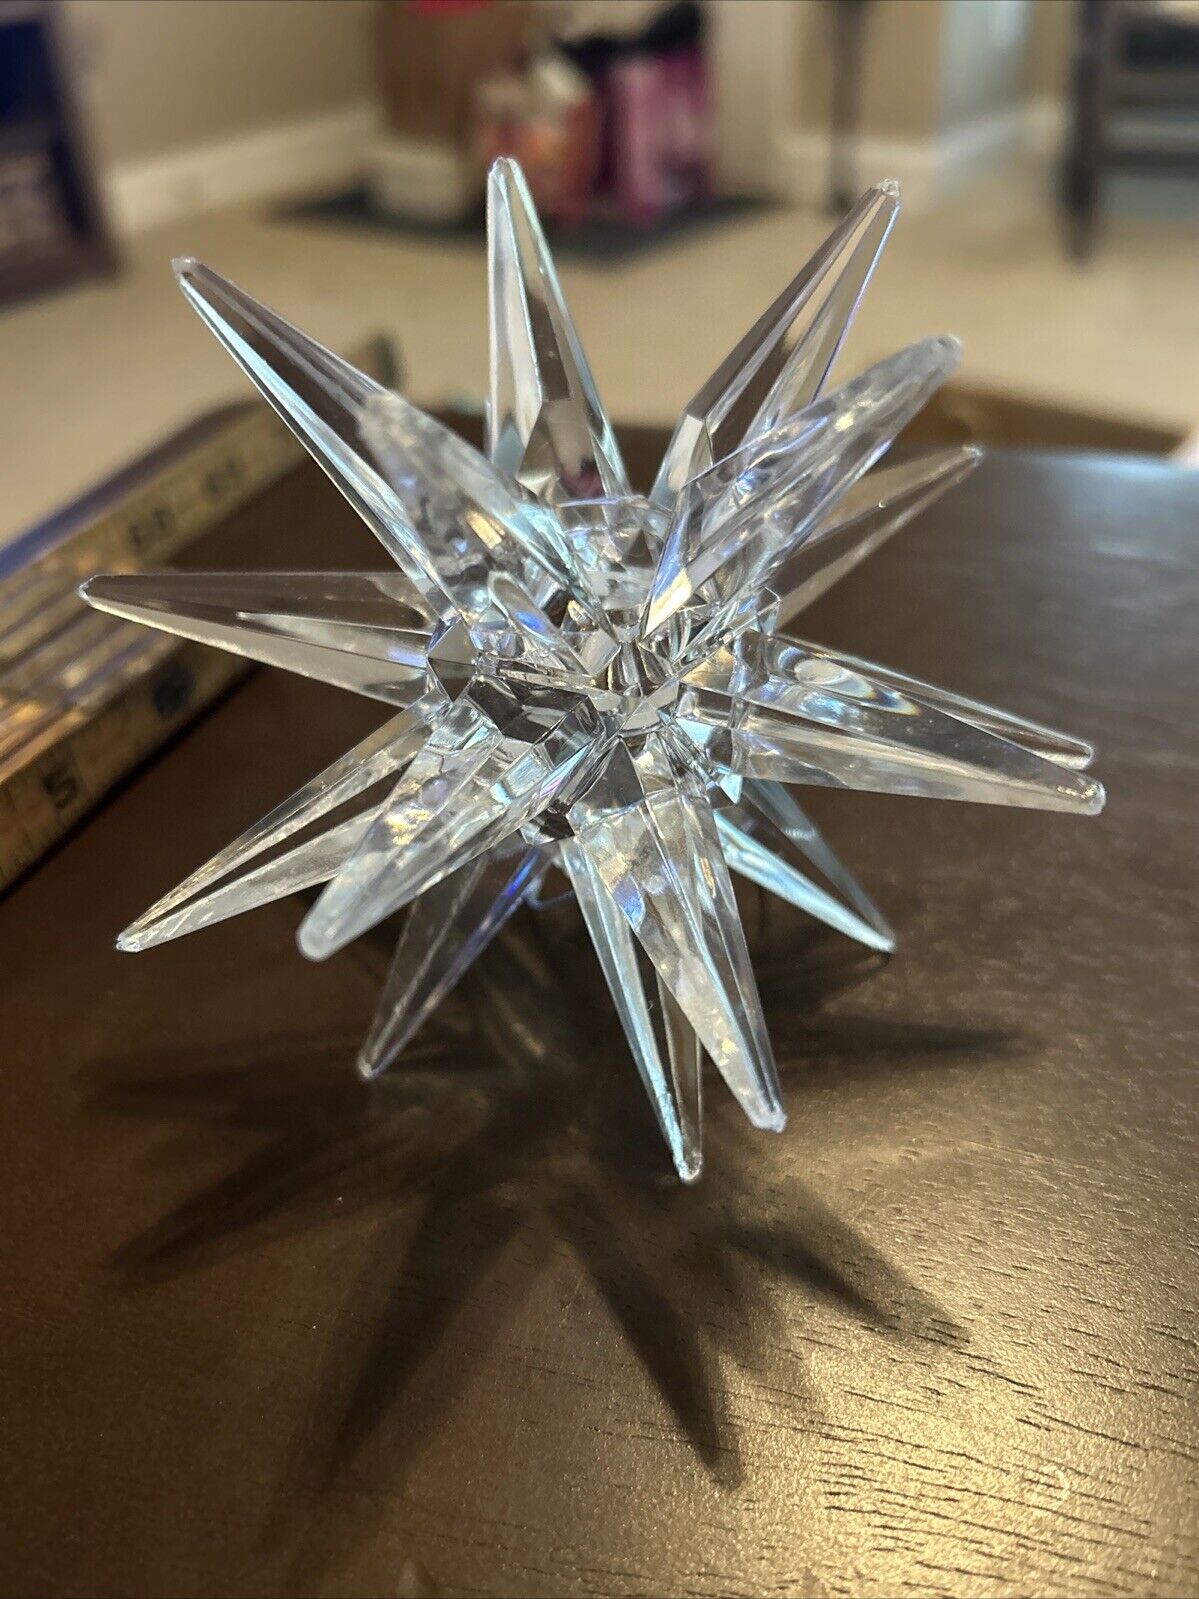 MCM Atomic/Sputnik Acrylic Star Ornament OR Candle Stick Holder Sparkling